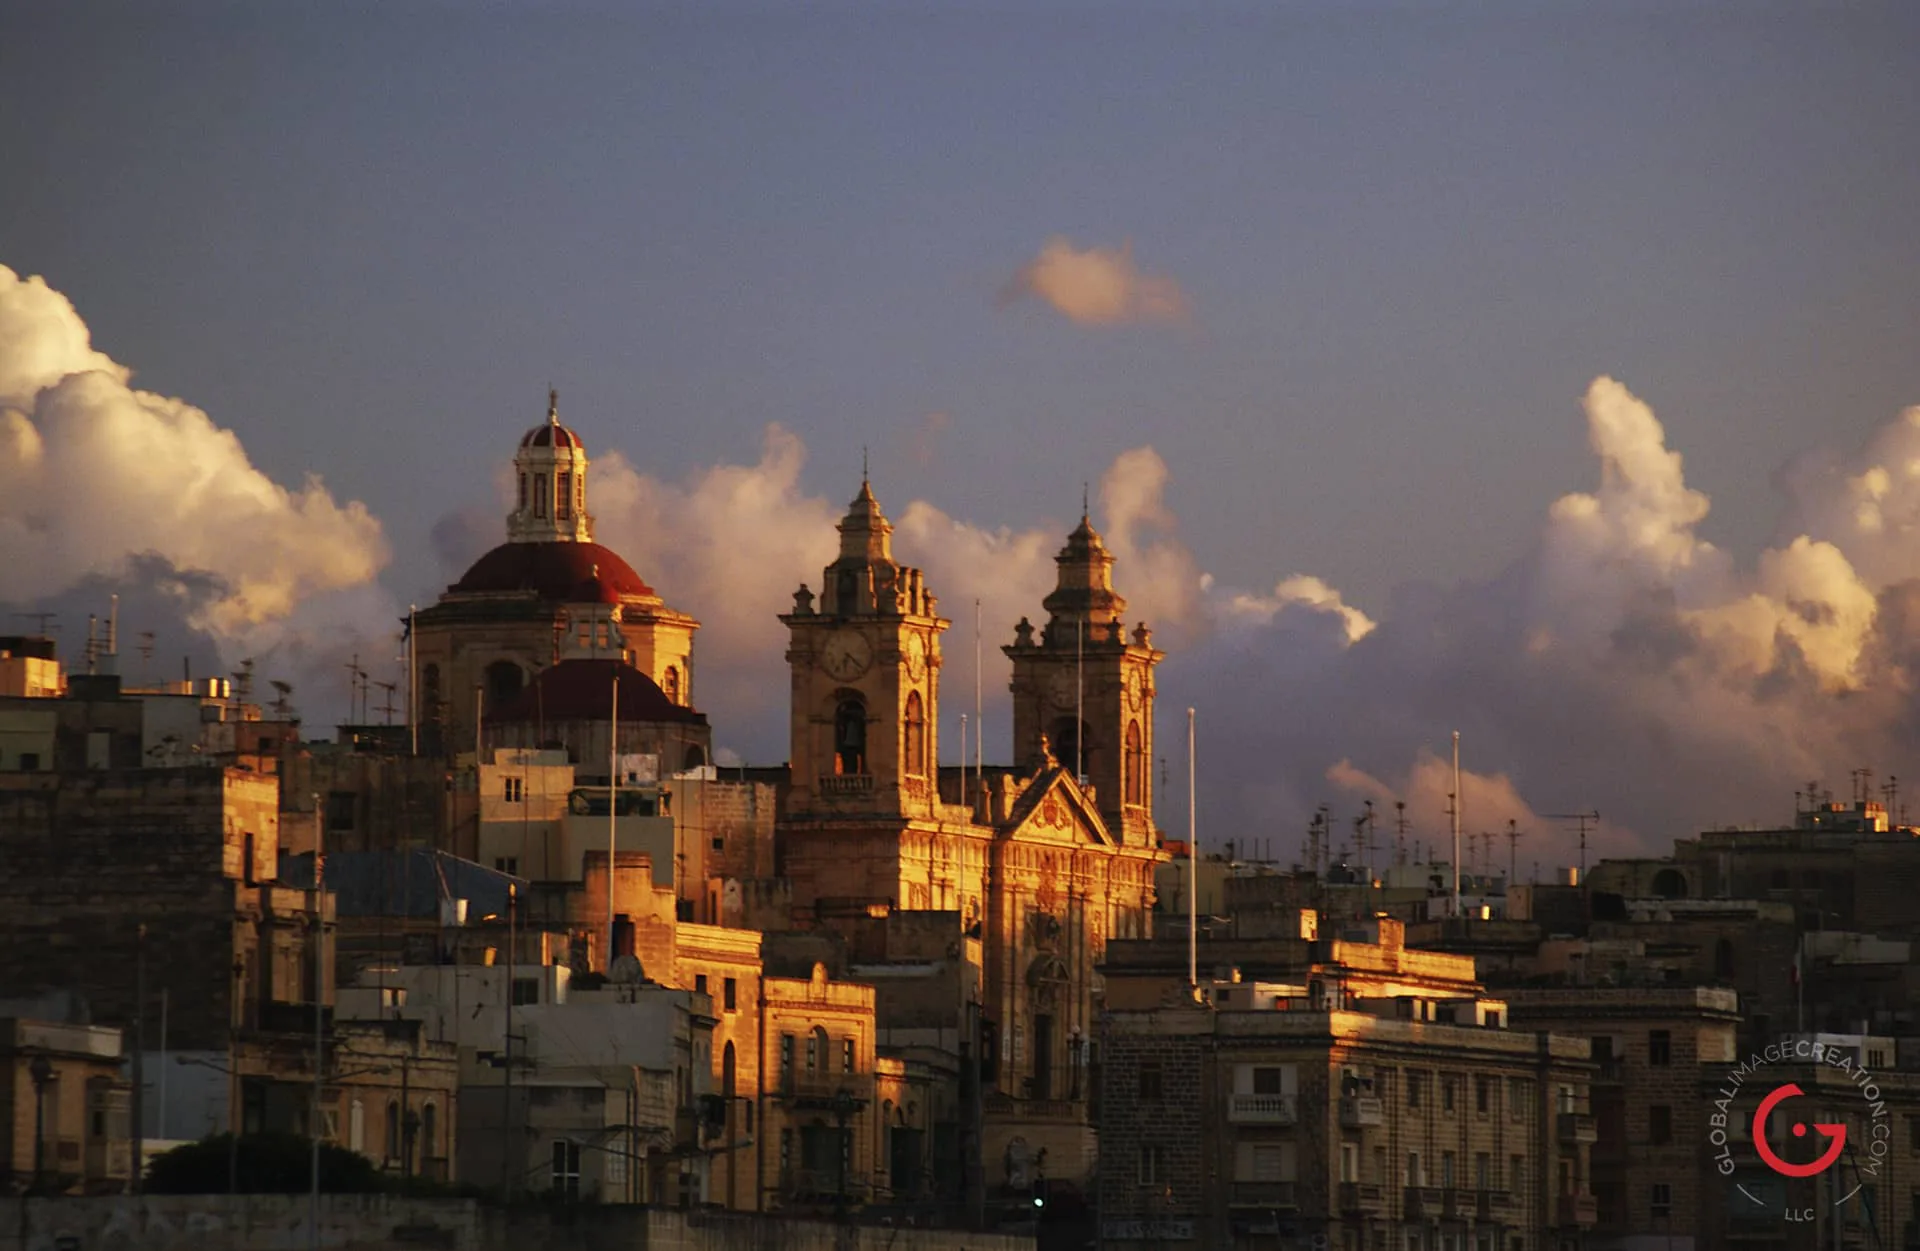 Sunset Photography on the Skyline Malta